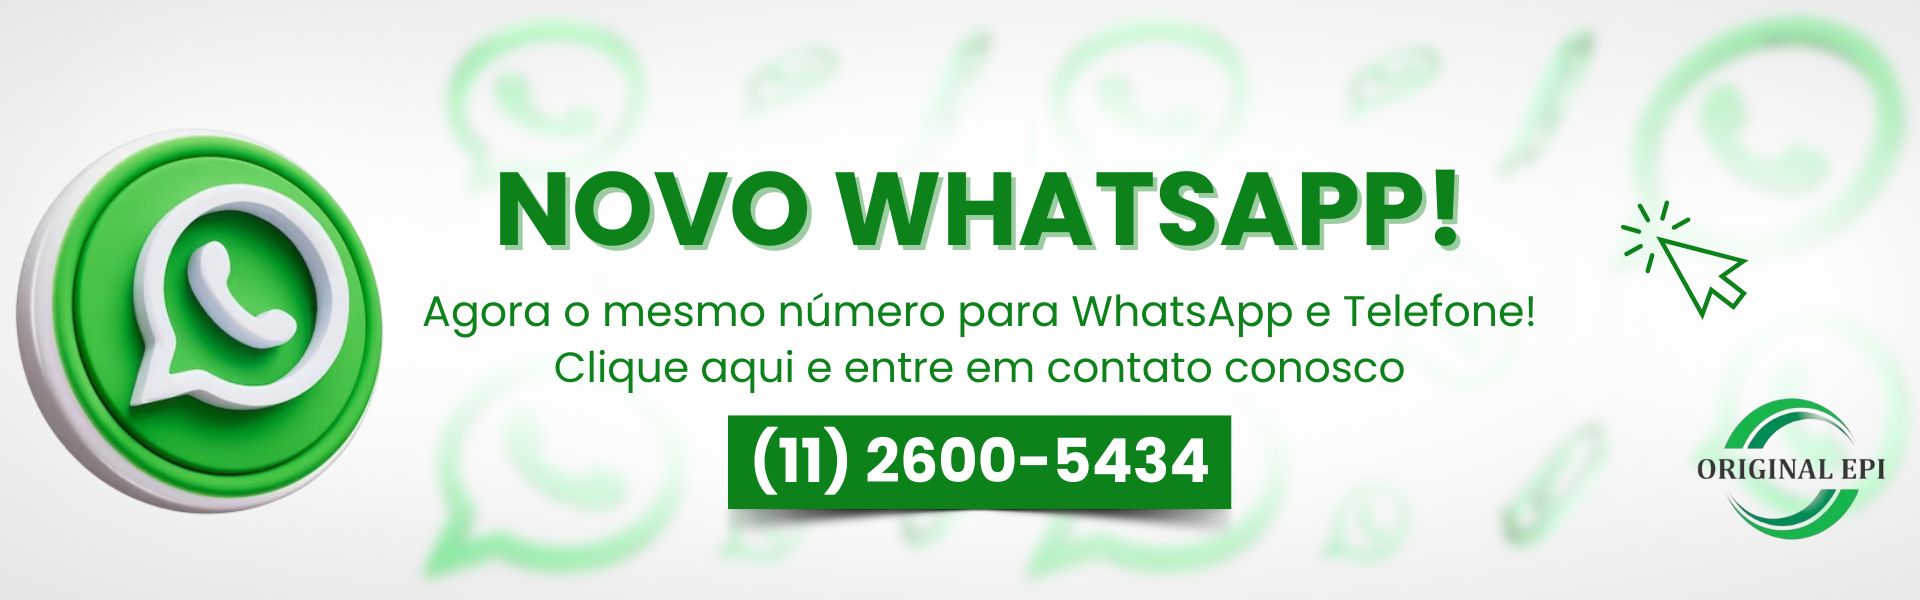 whatsapp novo